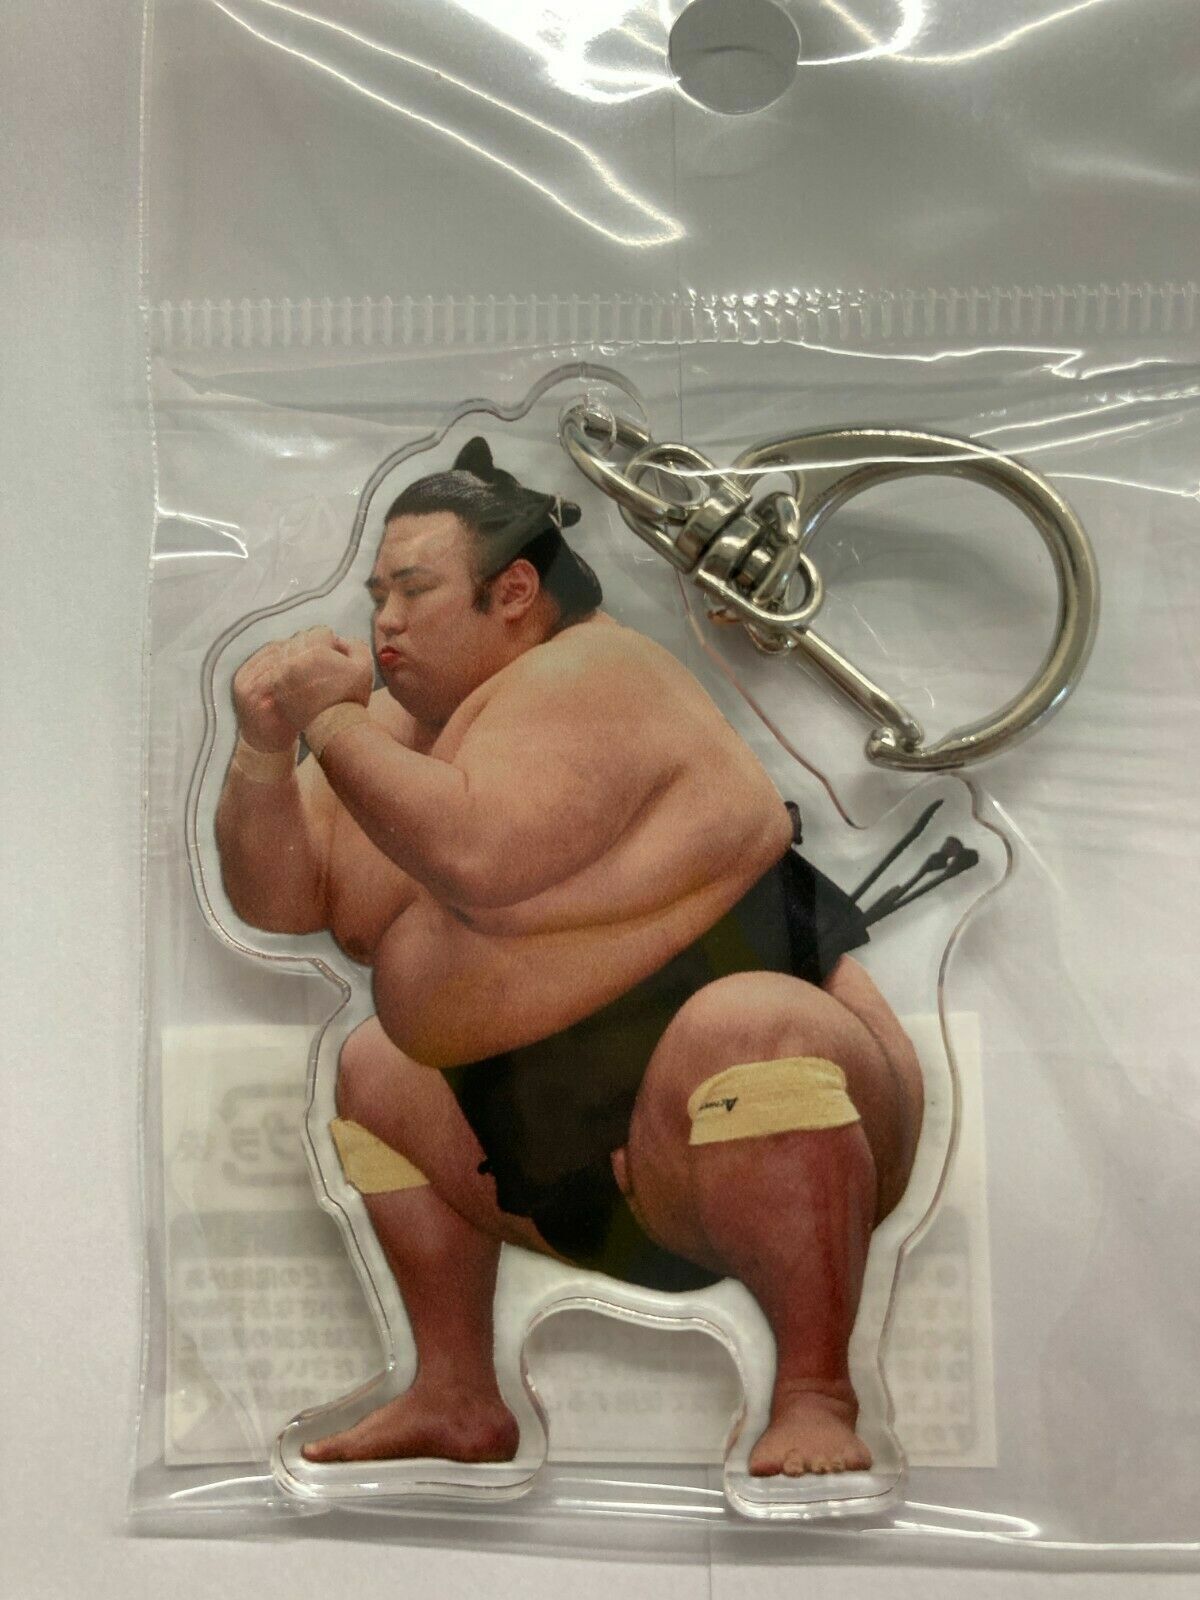 2 sumo keychains